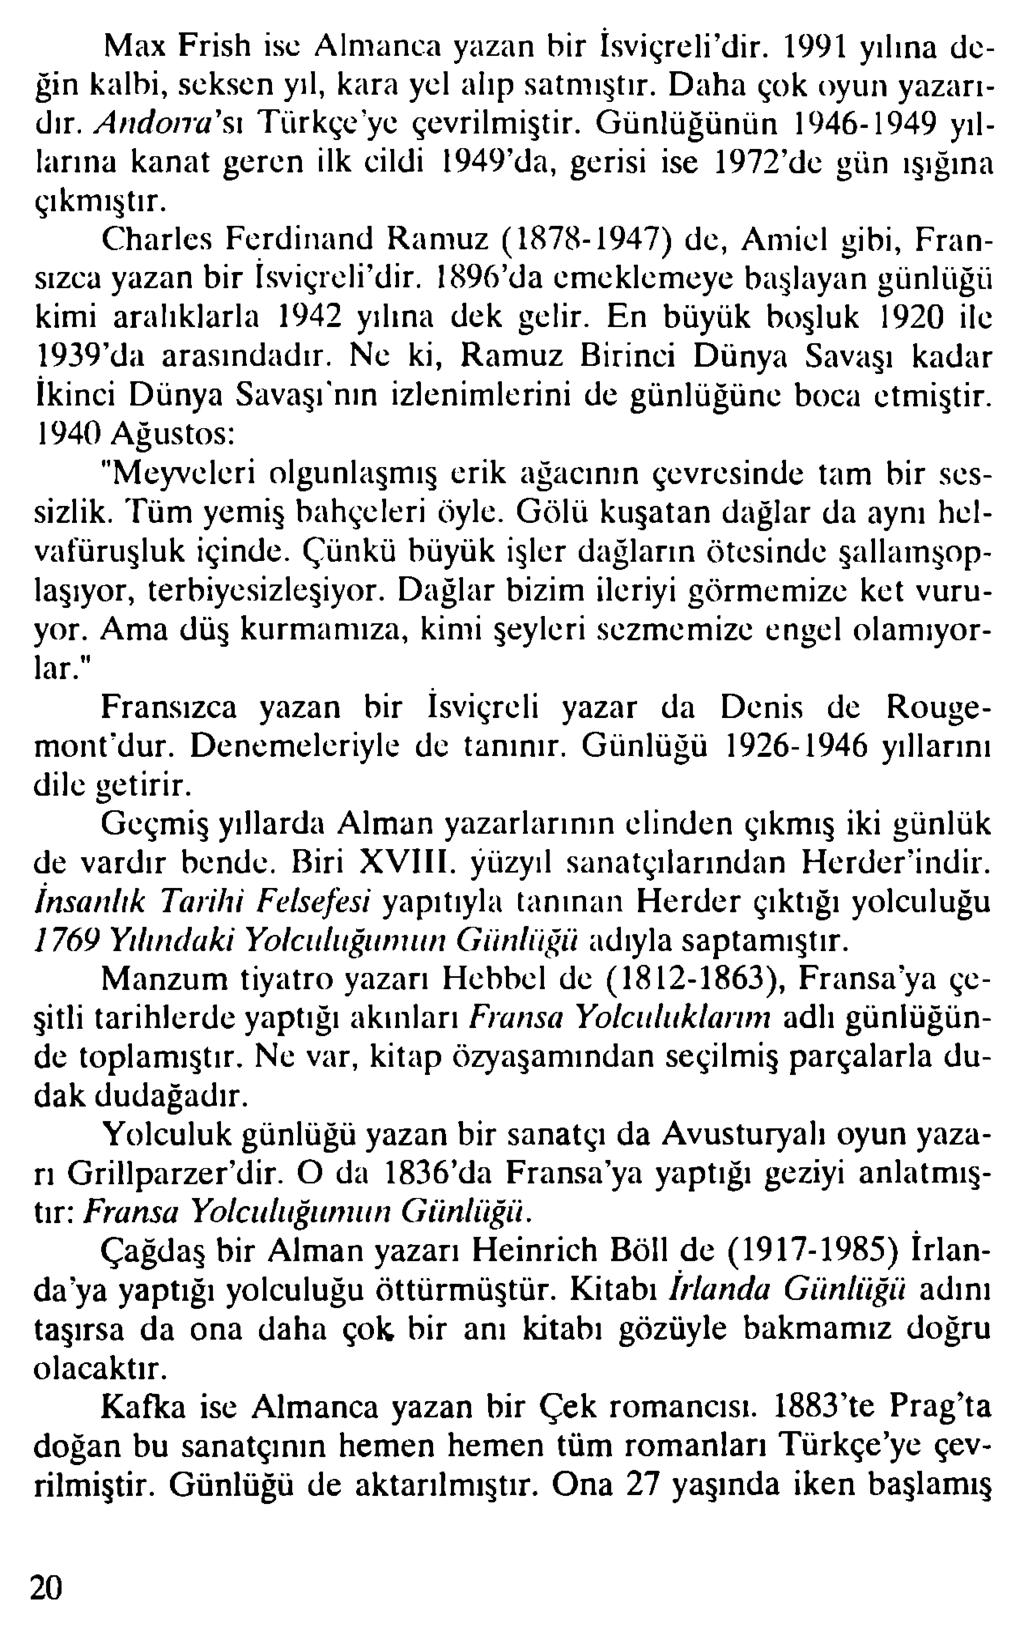 Max Frish ise Almanca yazan bir İsviçreli dir. 1991 yılına değin kalbi, seksen yıl, kara yel alıp satmıştır. Daha çok oyun yazarıdır. A ndoıra sı Türkçe ye çevrilmiştir.